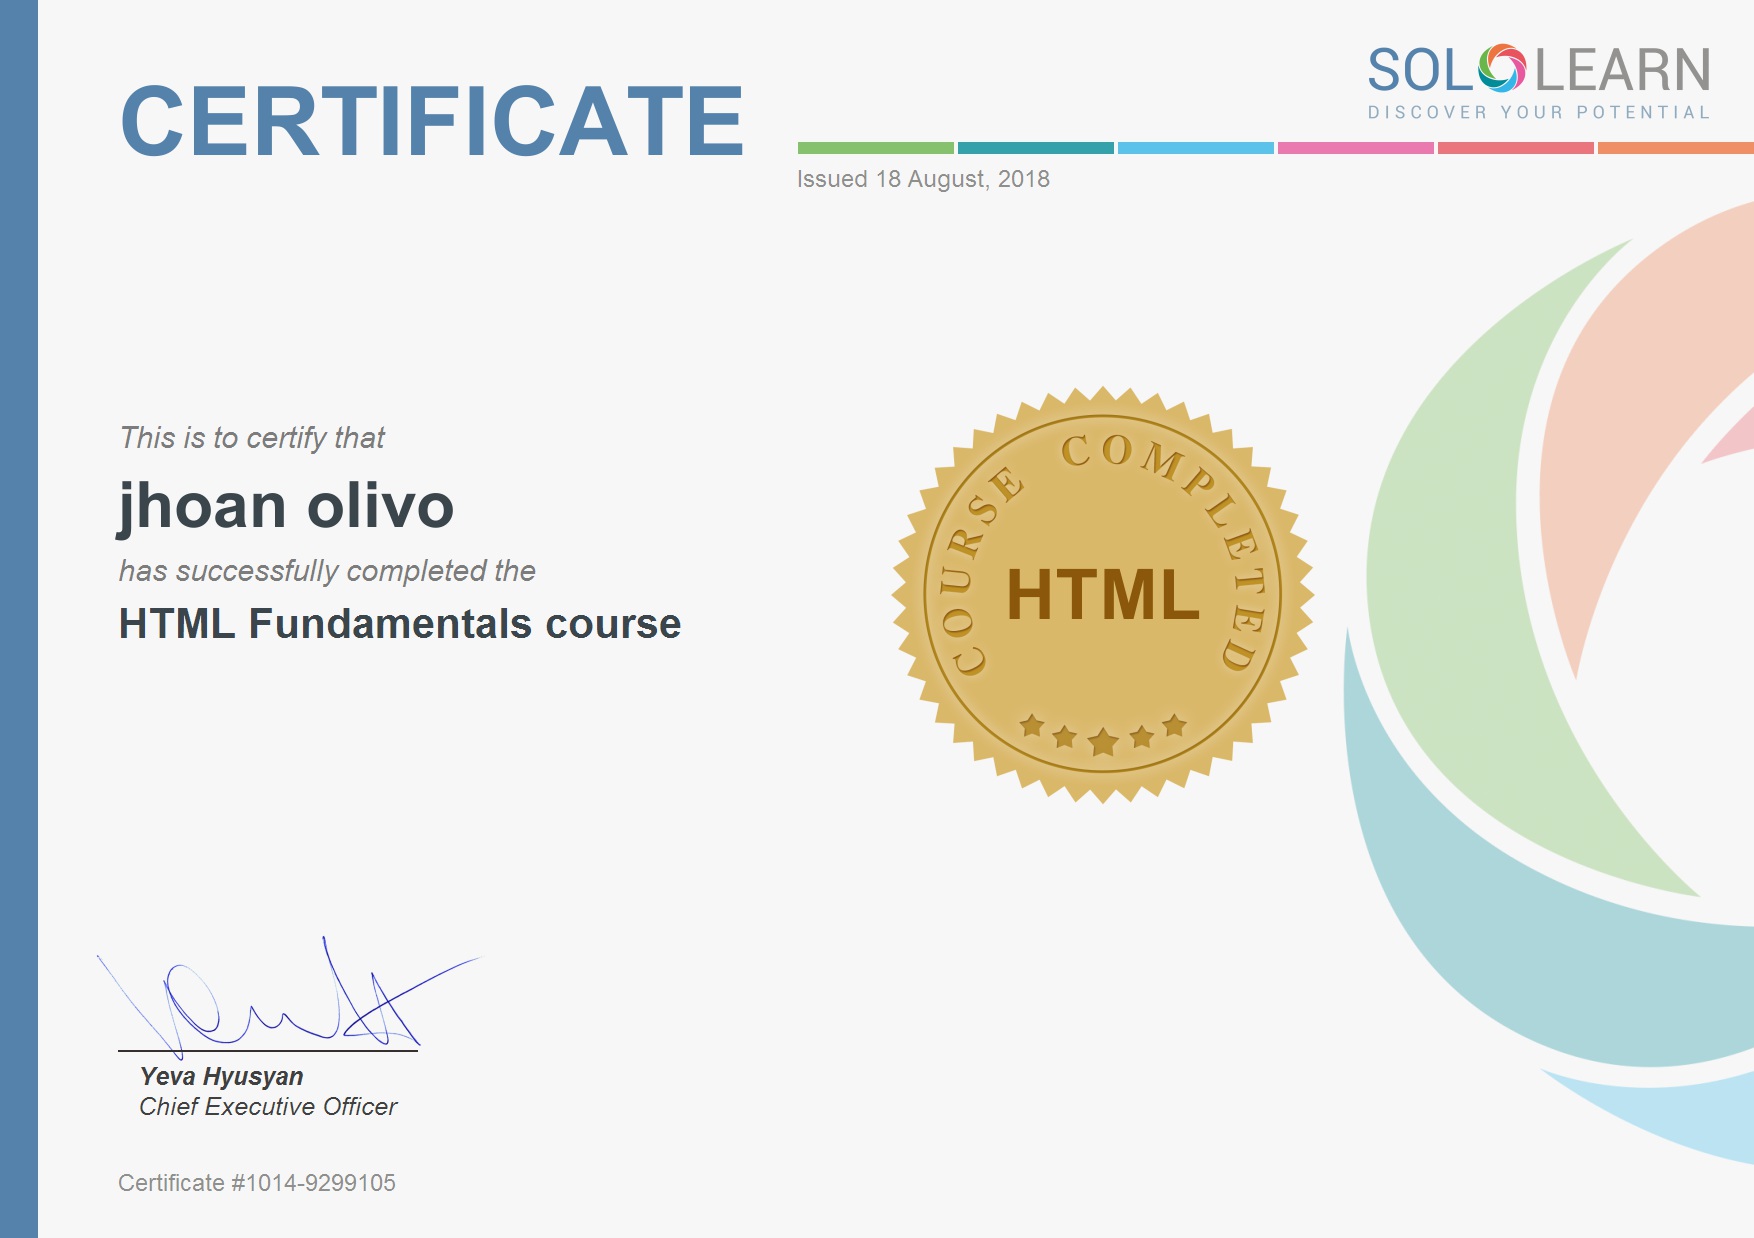 Certificado de la aplicacion Sololearn en fundamentos de html